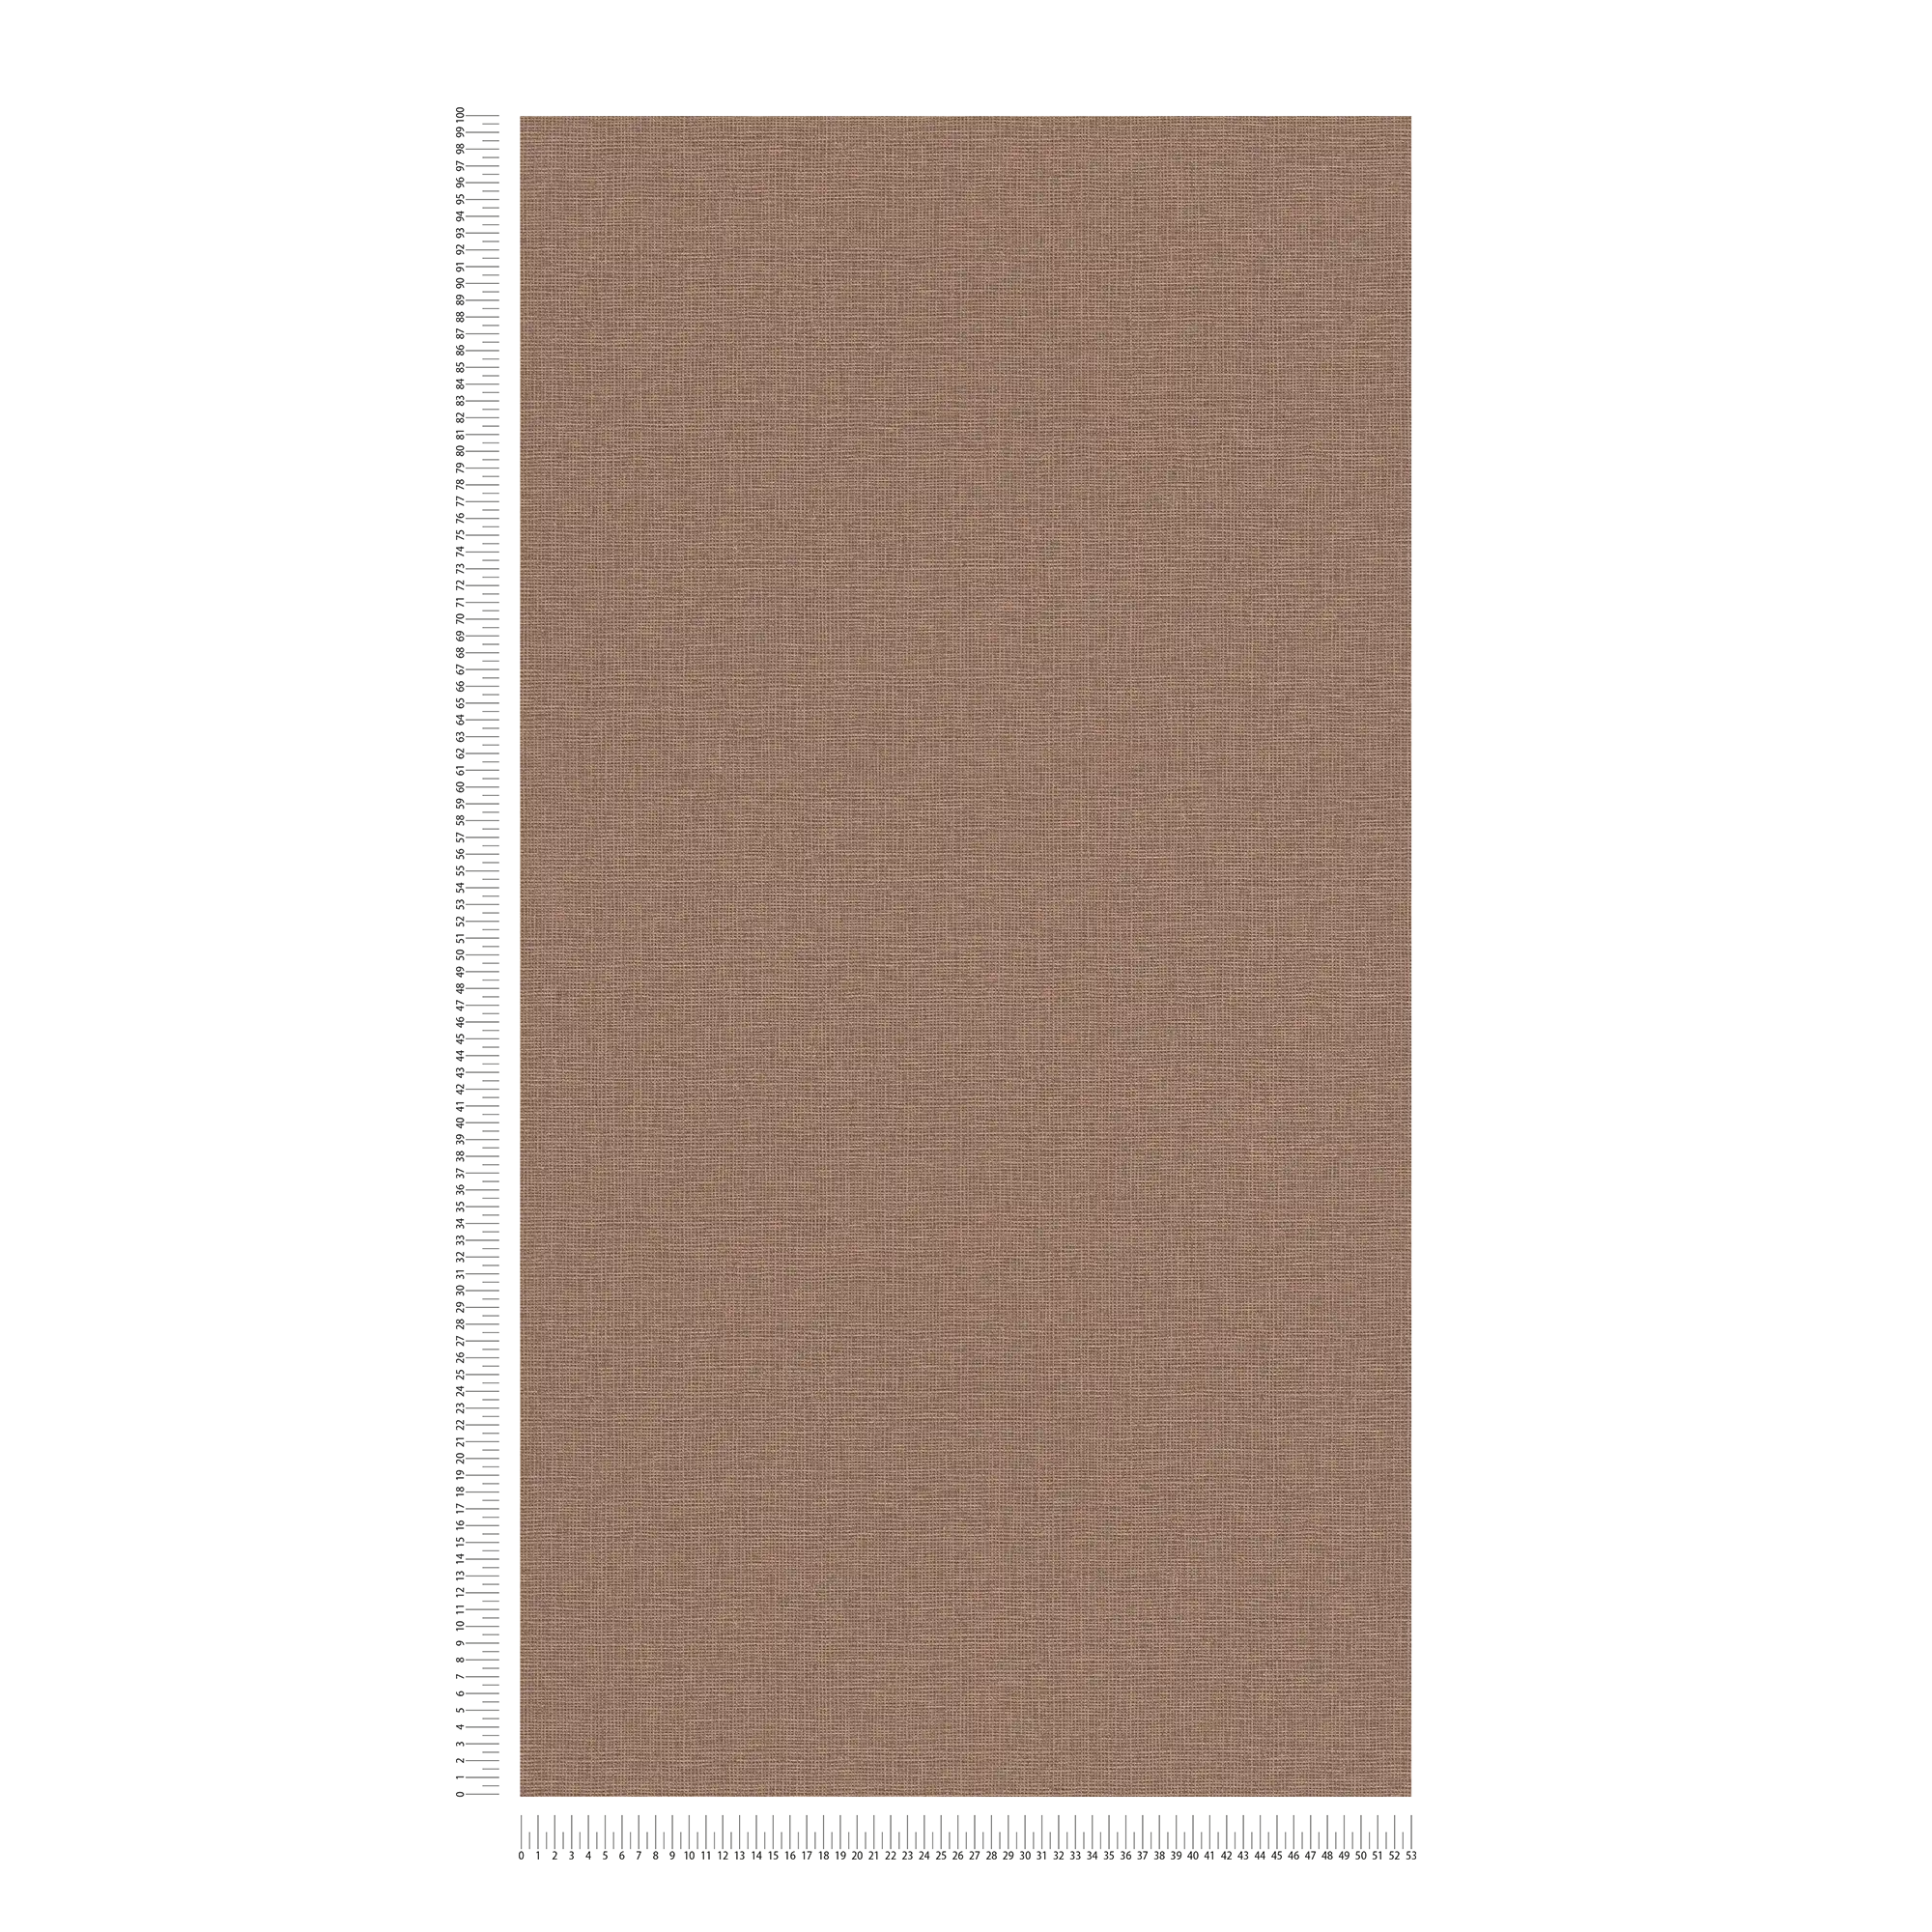             Papier peint intissé uni avec structure lin - marron
        